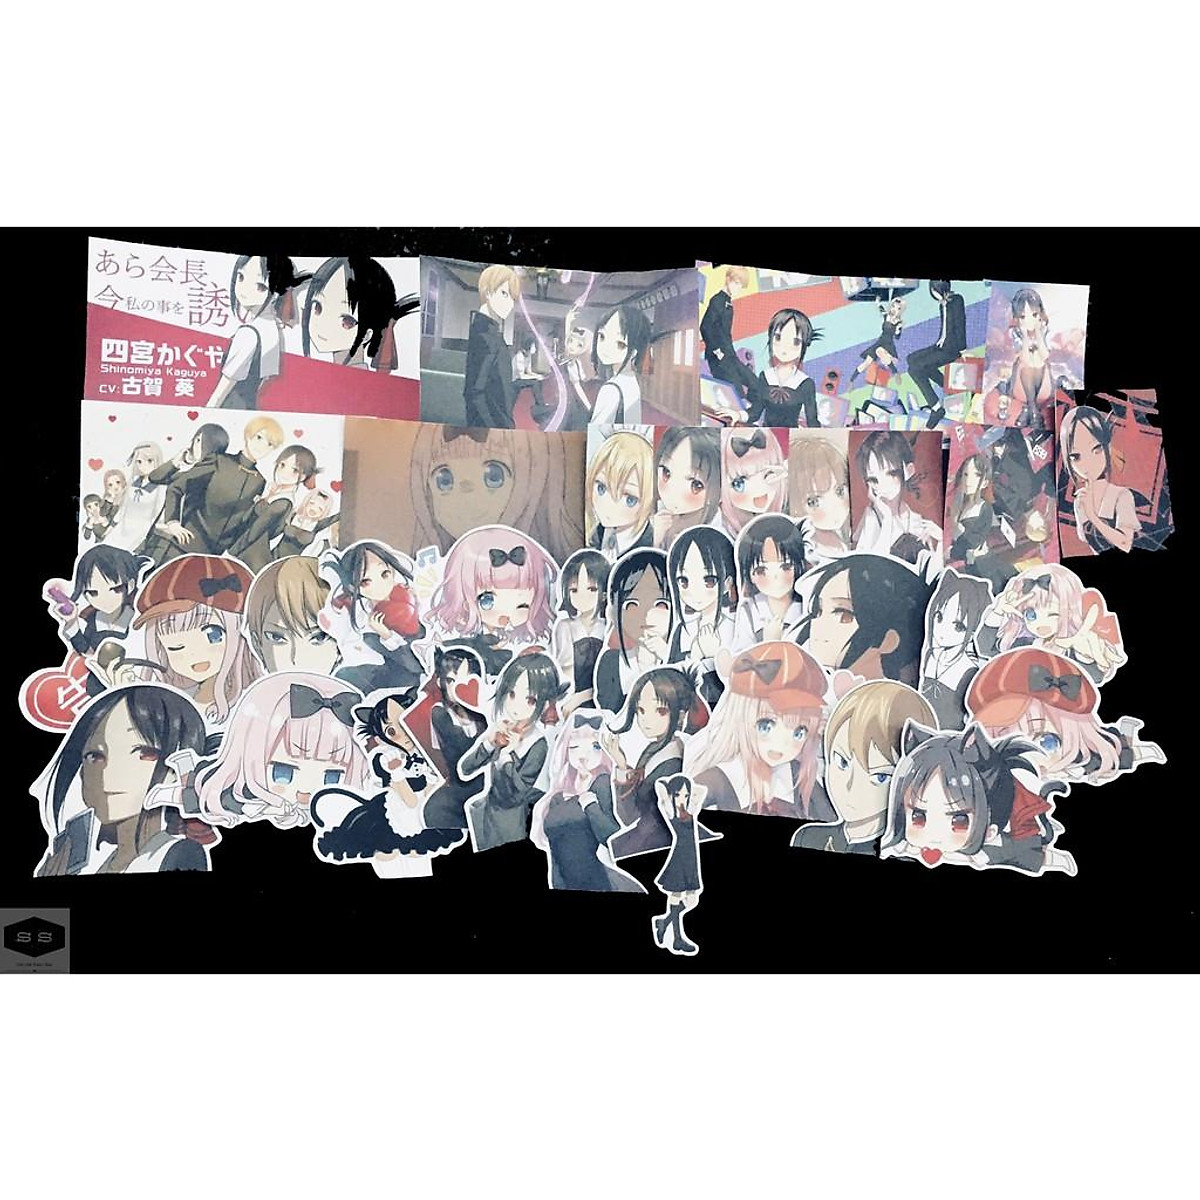 Mua Bộ hình dán - sticker anime Kaguya-sama: Love Is War - Cuộc chiến tỏ  tình của những thiên tài